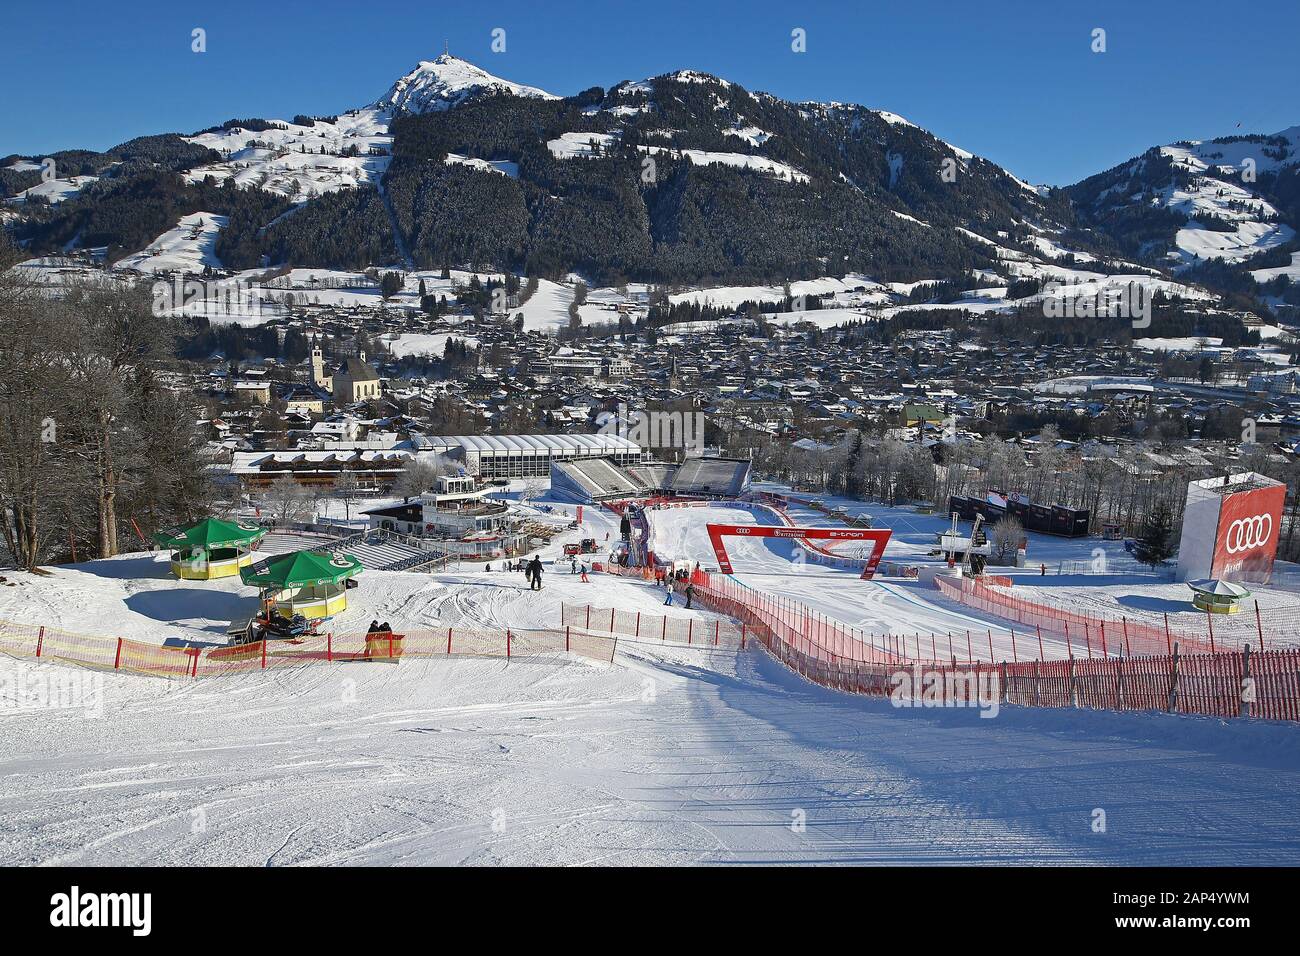 Vorschaubilder für die Audi FIS Alpine Ski World Cup Downhill Rennen am 21. Januar in Kitzbühel, Österreich 2020. Stockfoto